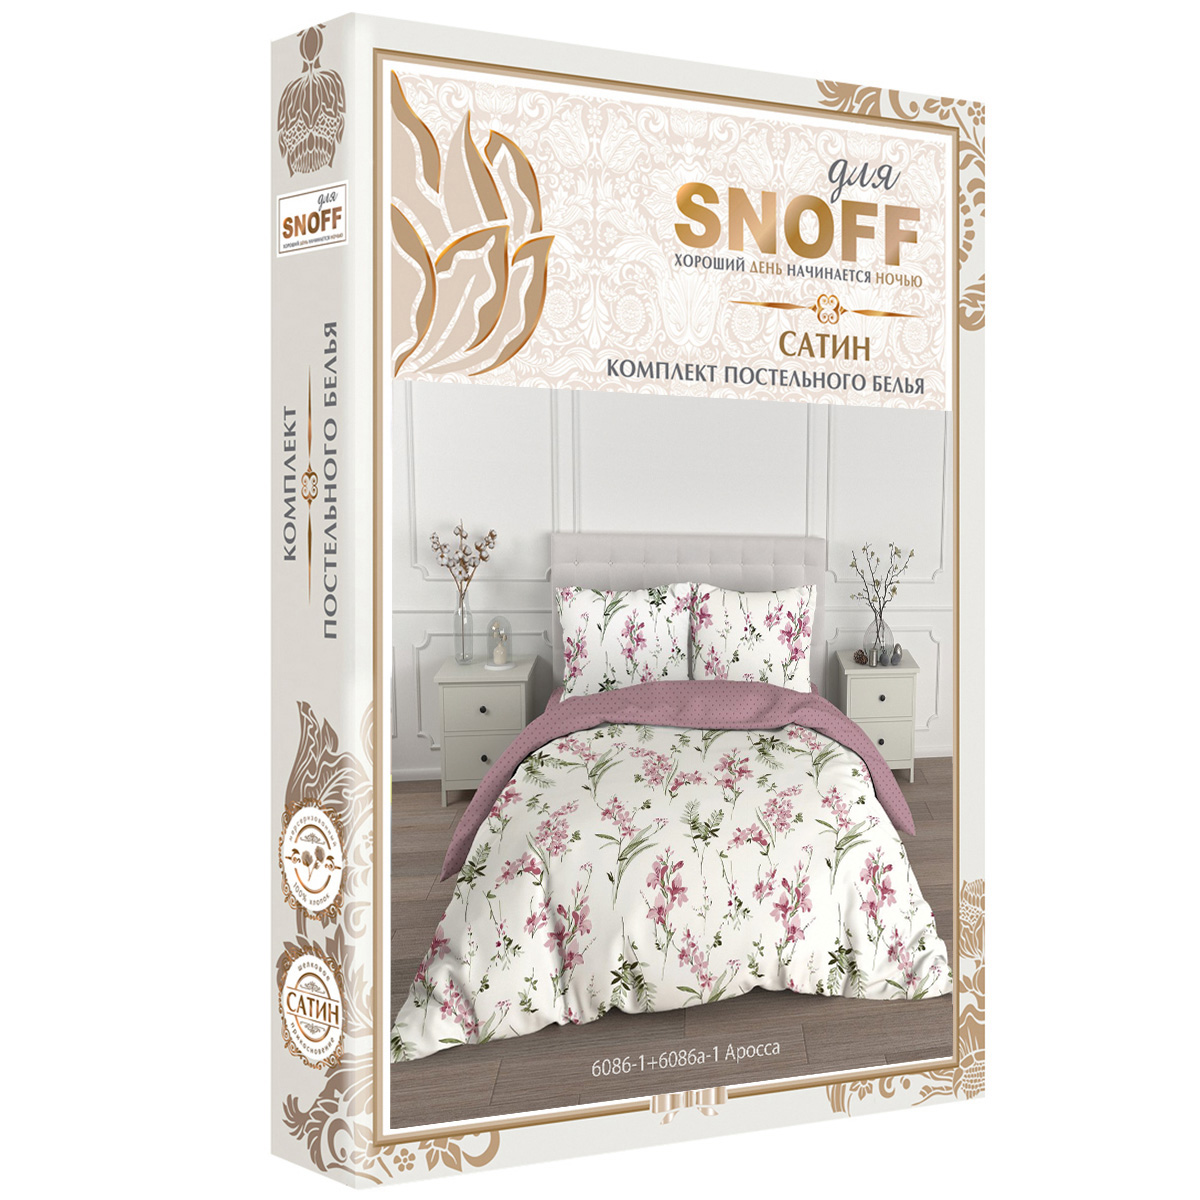 Комплект постельного белья для SNOFF Аросса евро сатин рис.6086-1+6086а-1 - фото 6